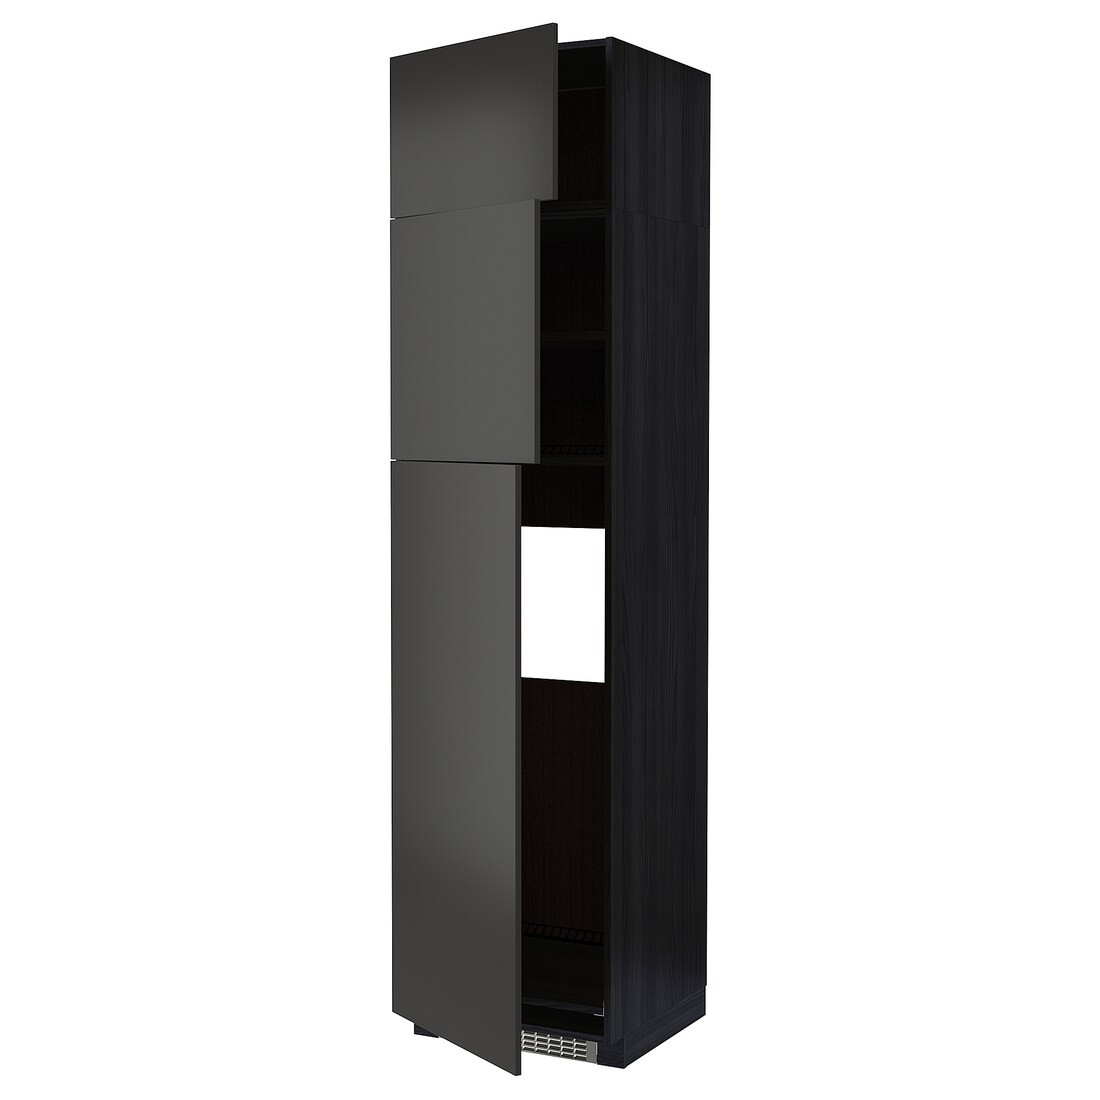 IKEA METOD МЕТОД Висока шафа для холодильника з 3 дверима, чорний / Nickebo матовий антрацит, 60x60x240 см 69498219 694.982.19